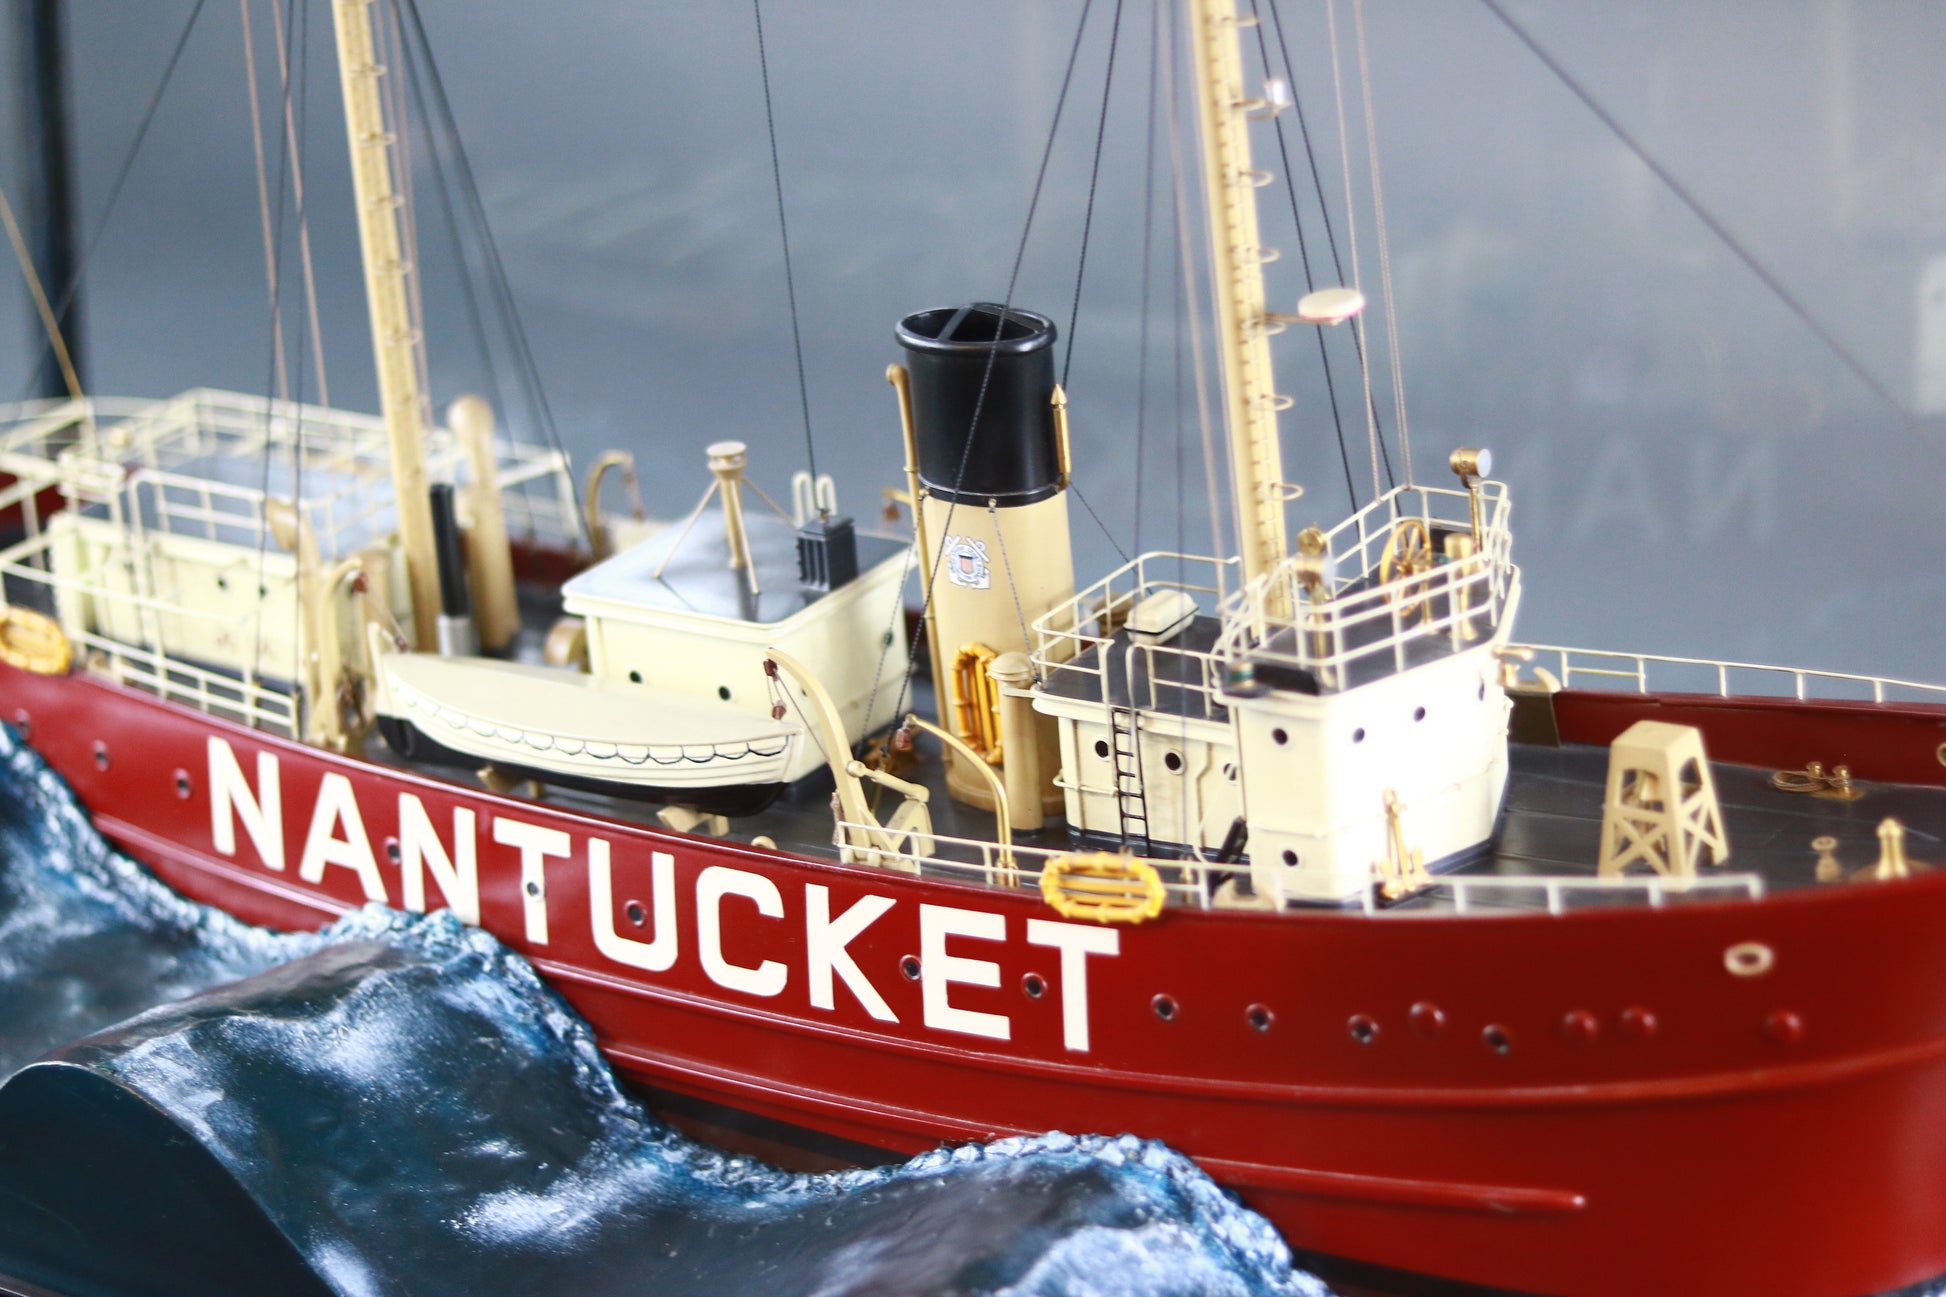 Cased Diorama | Nantucket Lightship - Lannan Gallery